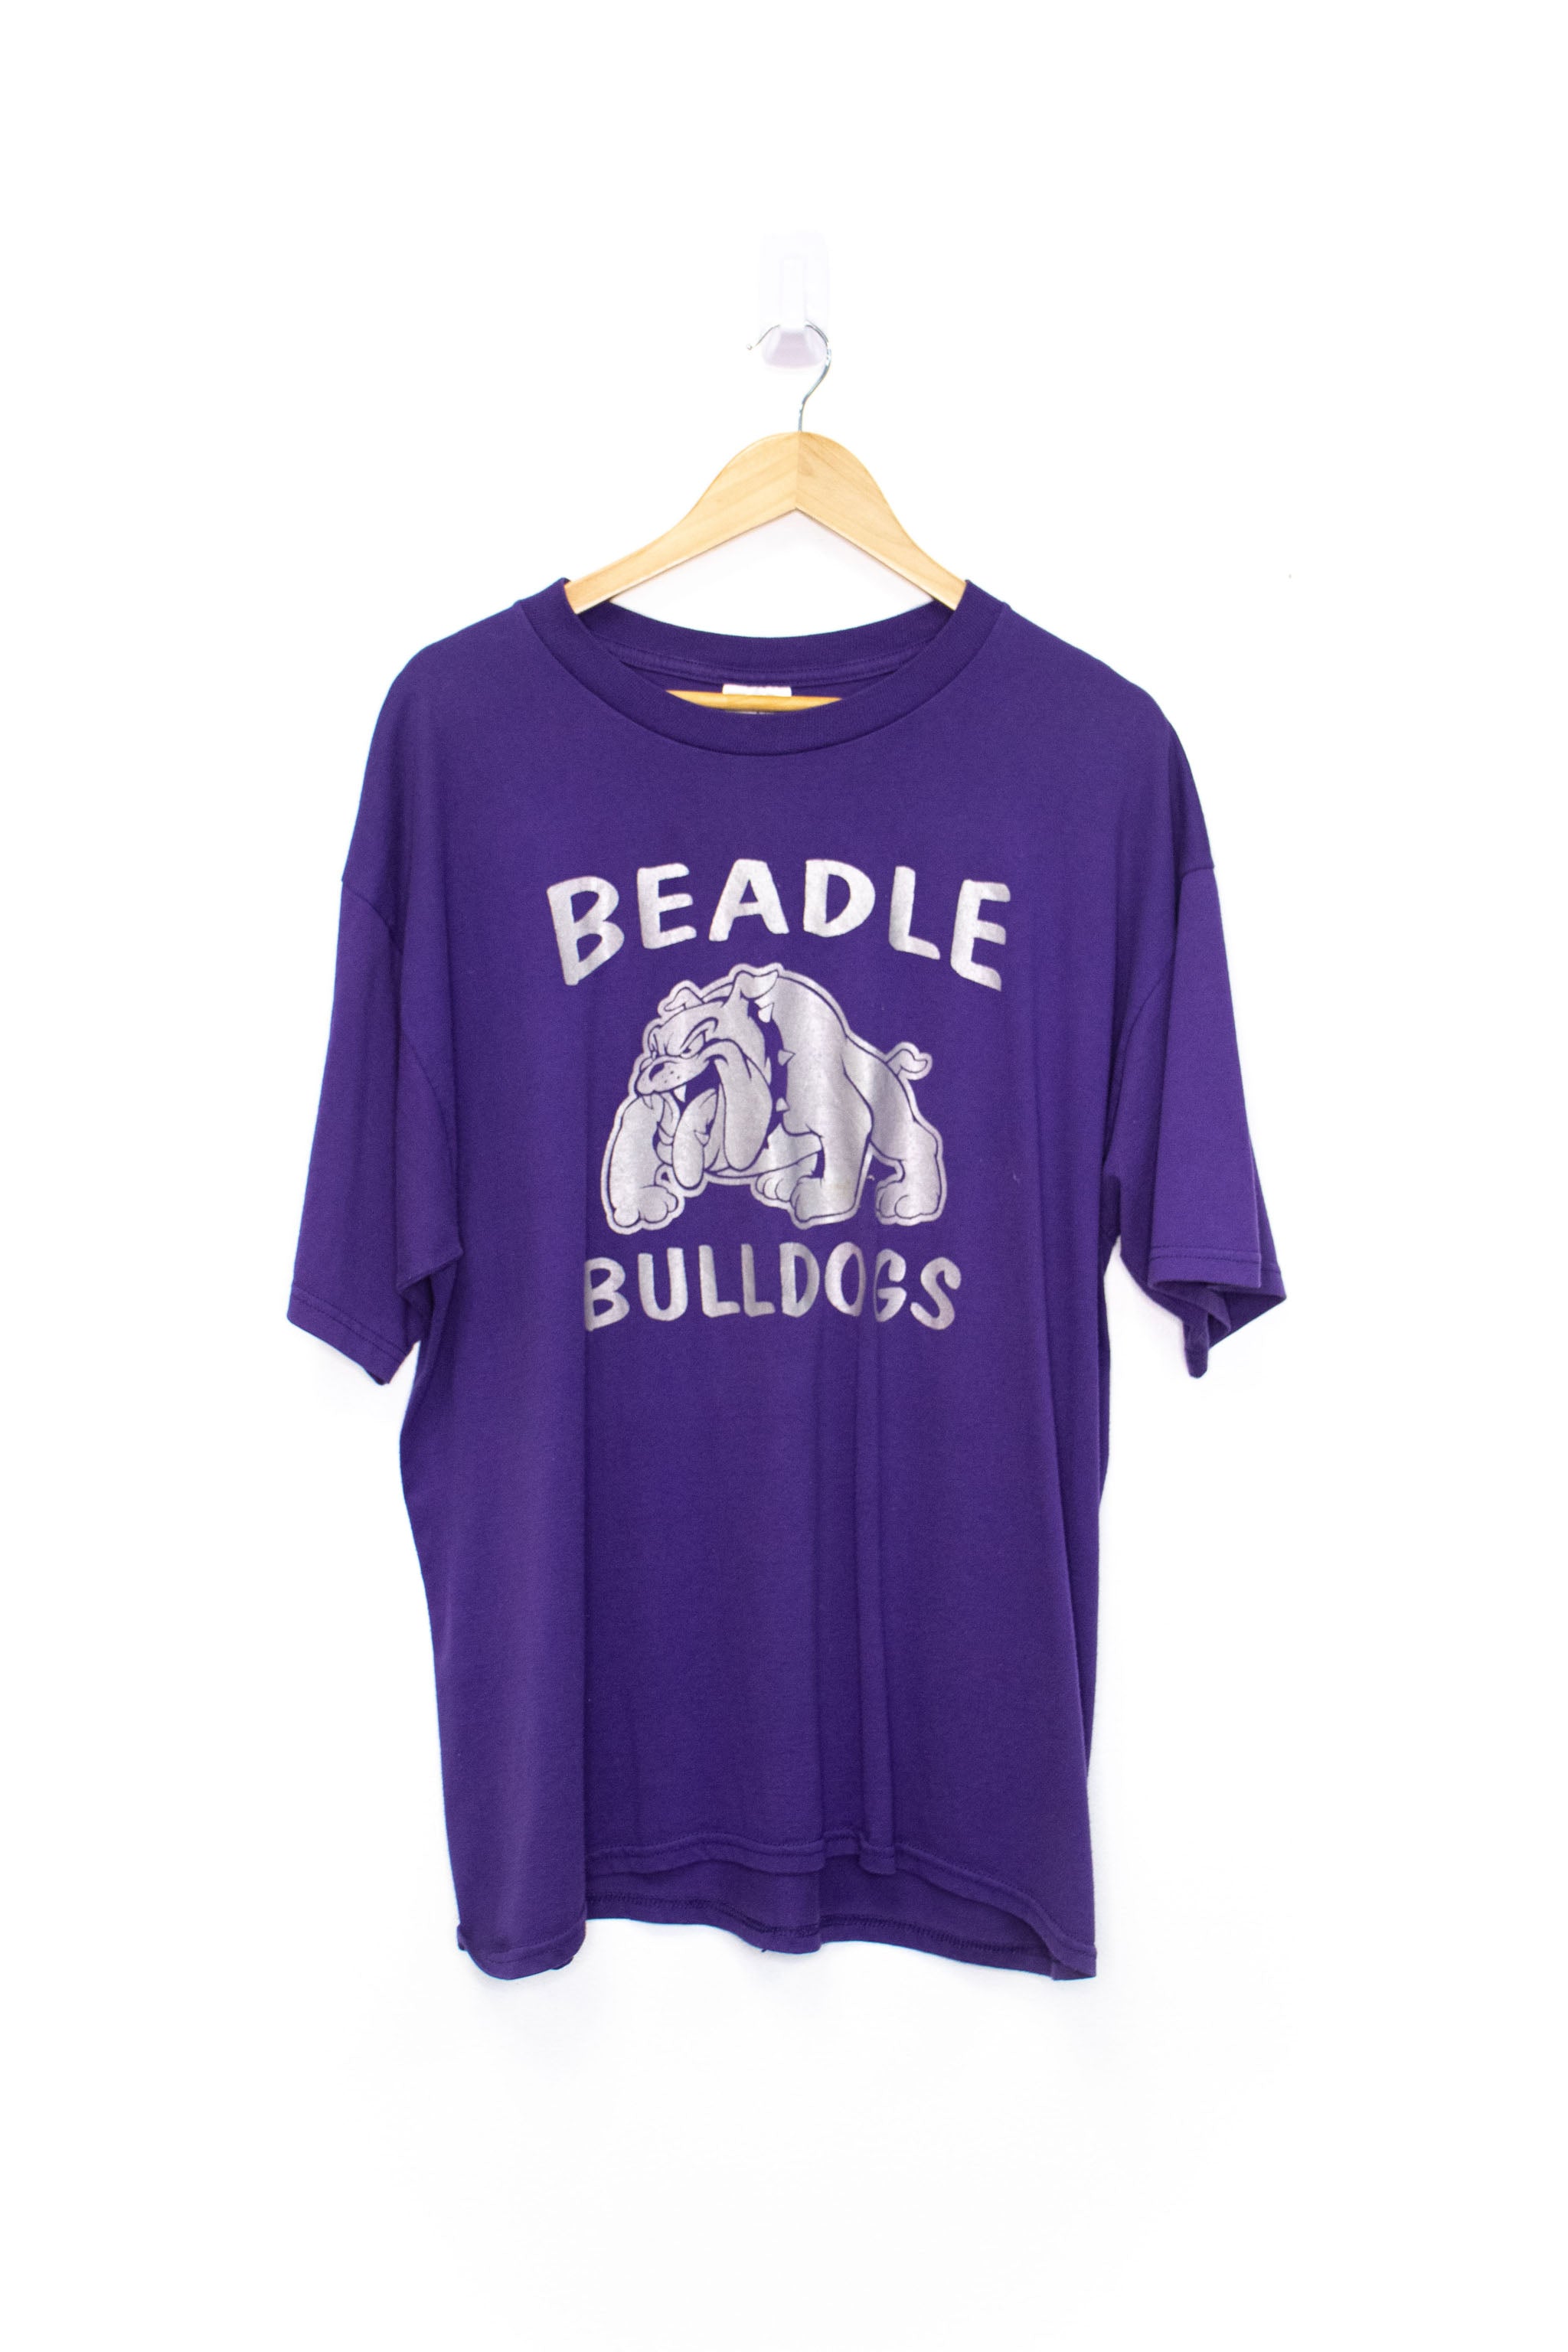 Vintage Beadle Bulldogs Tee